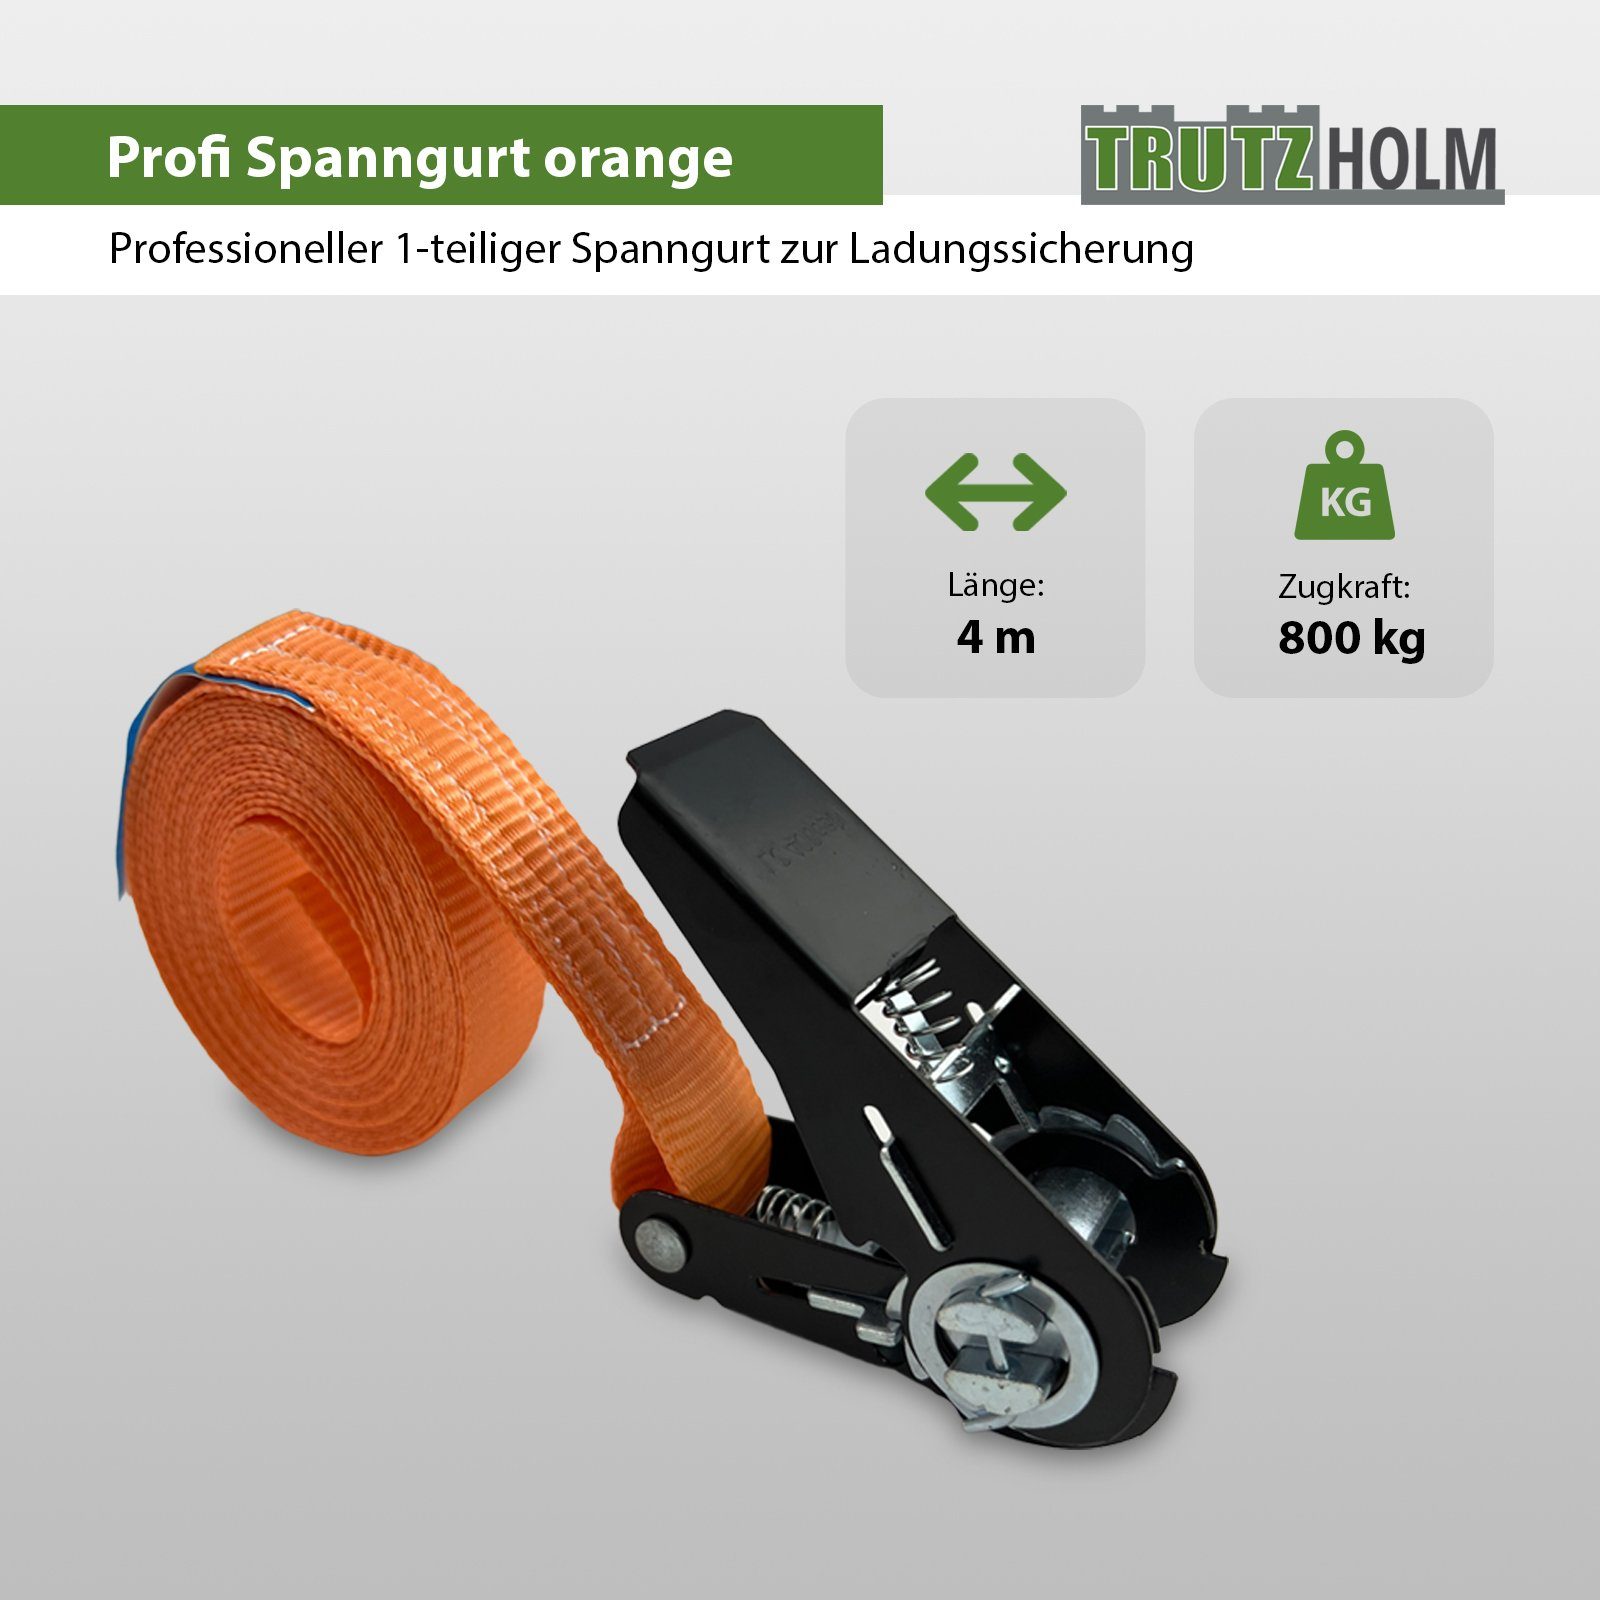 TRUTZHOLM Spanngurt 2x Ratschen Spanngurte 800kg 1-tlg 4m Schwarzes (Set) Spanngurt Orange 0,8t